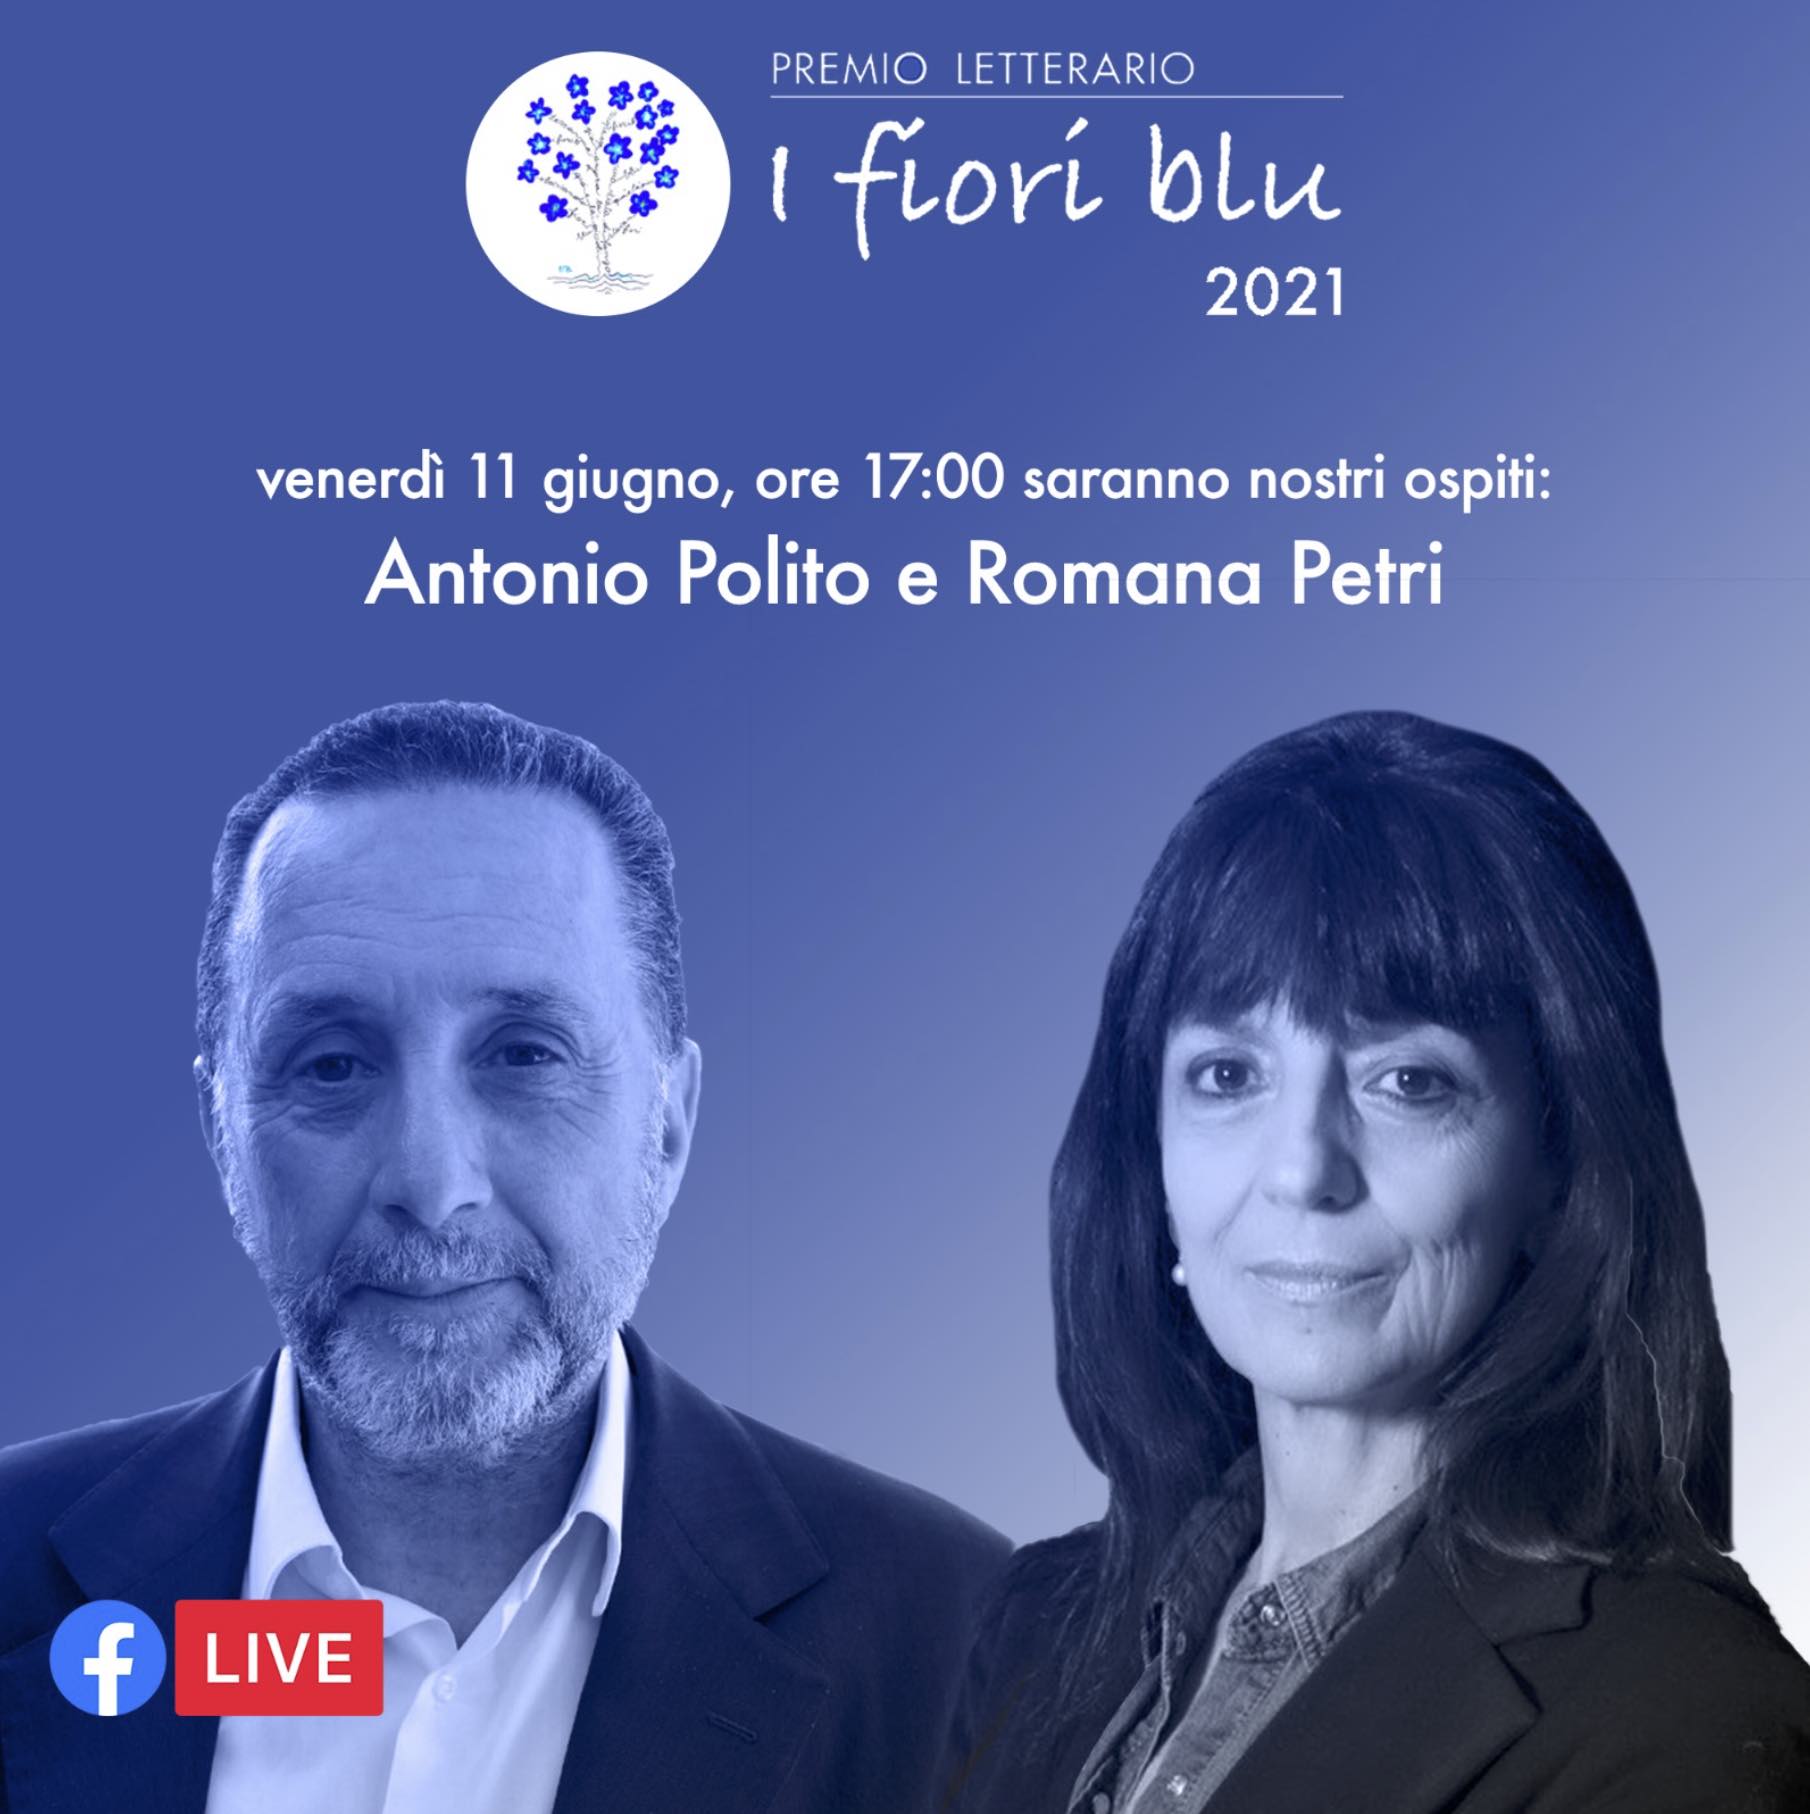 11 giugno - Antonio Polito e Romana Petri a “I fiori blu”